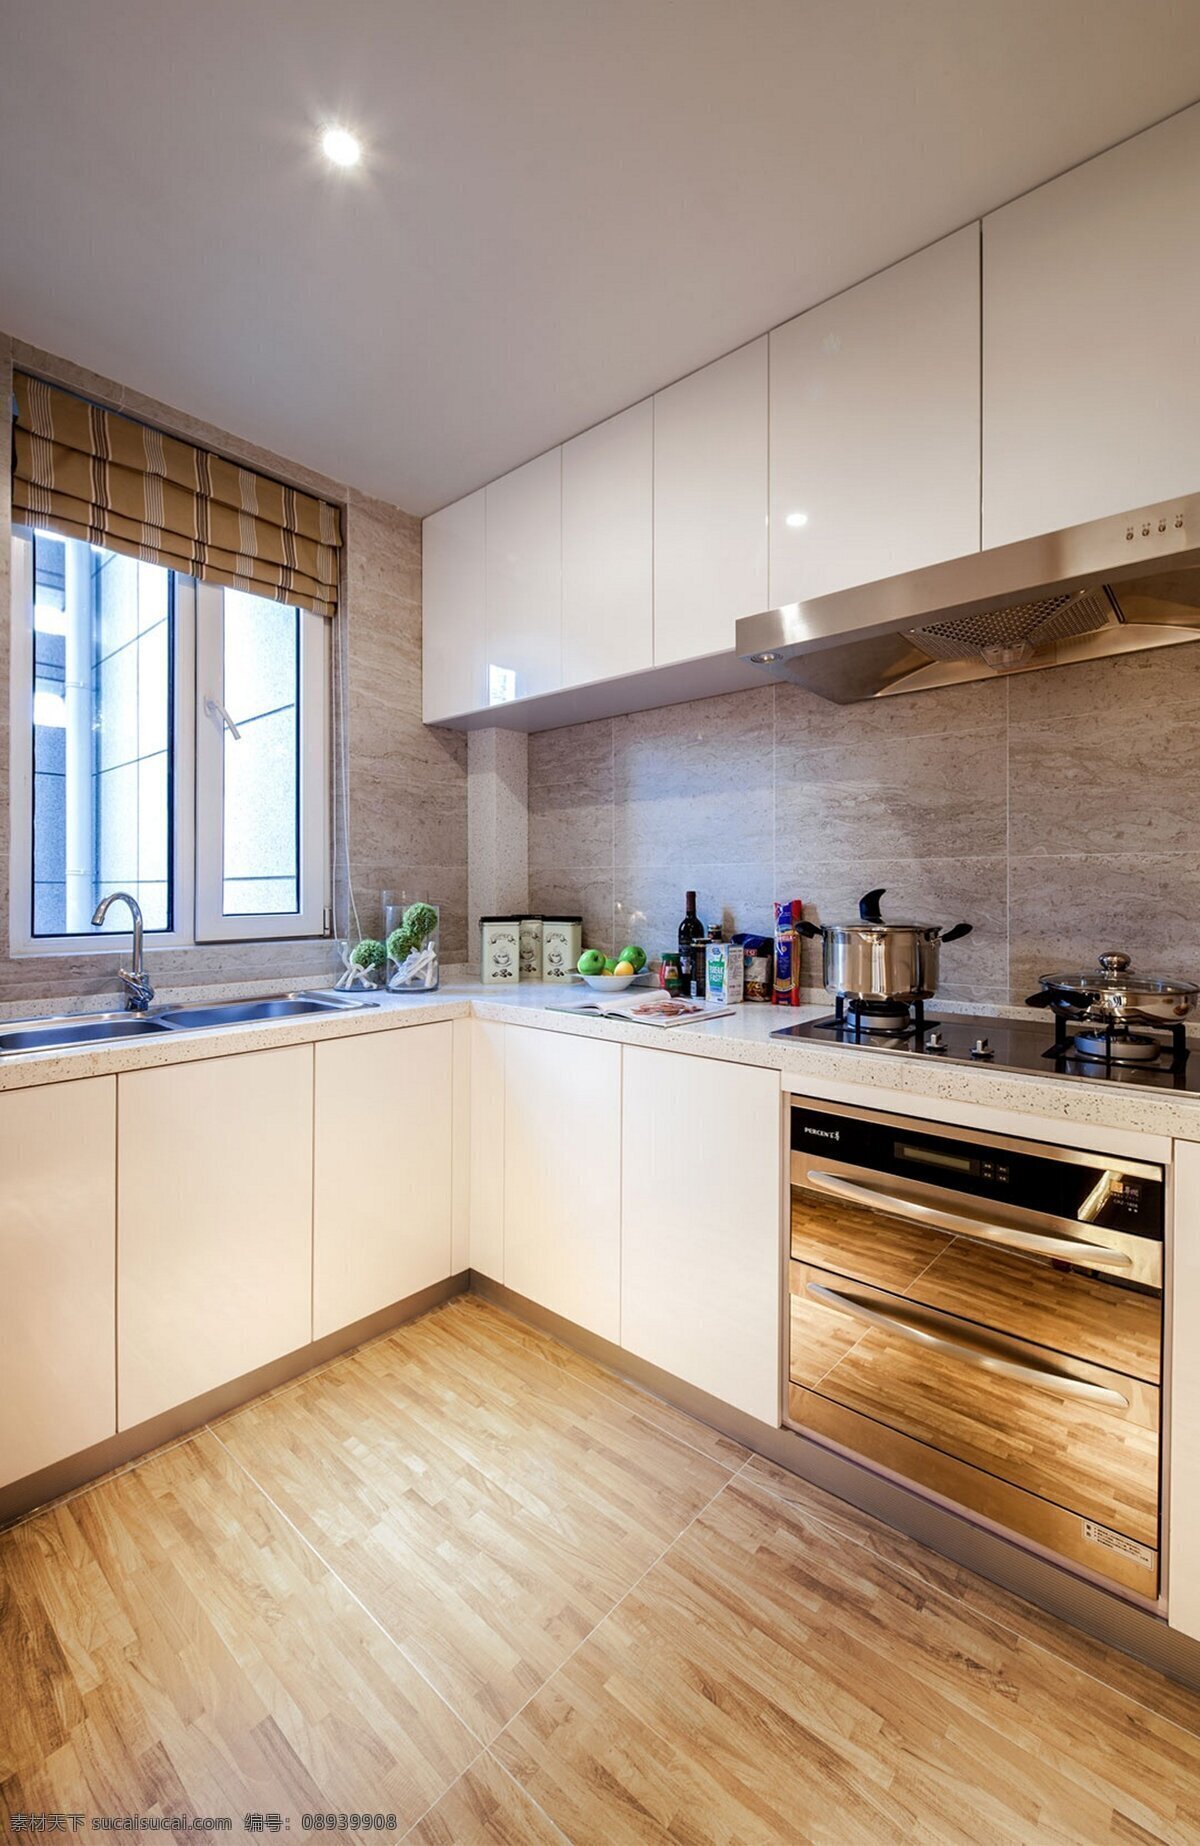 美式 清新 厨房 室内装修 效果图 洗手池 厨房装修 木地板 白色柜子